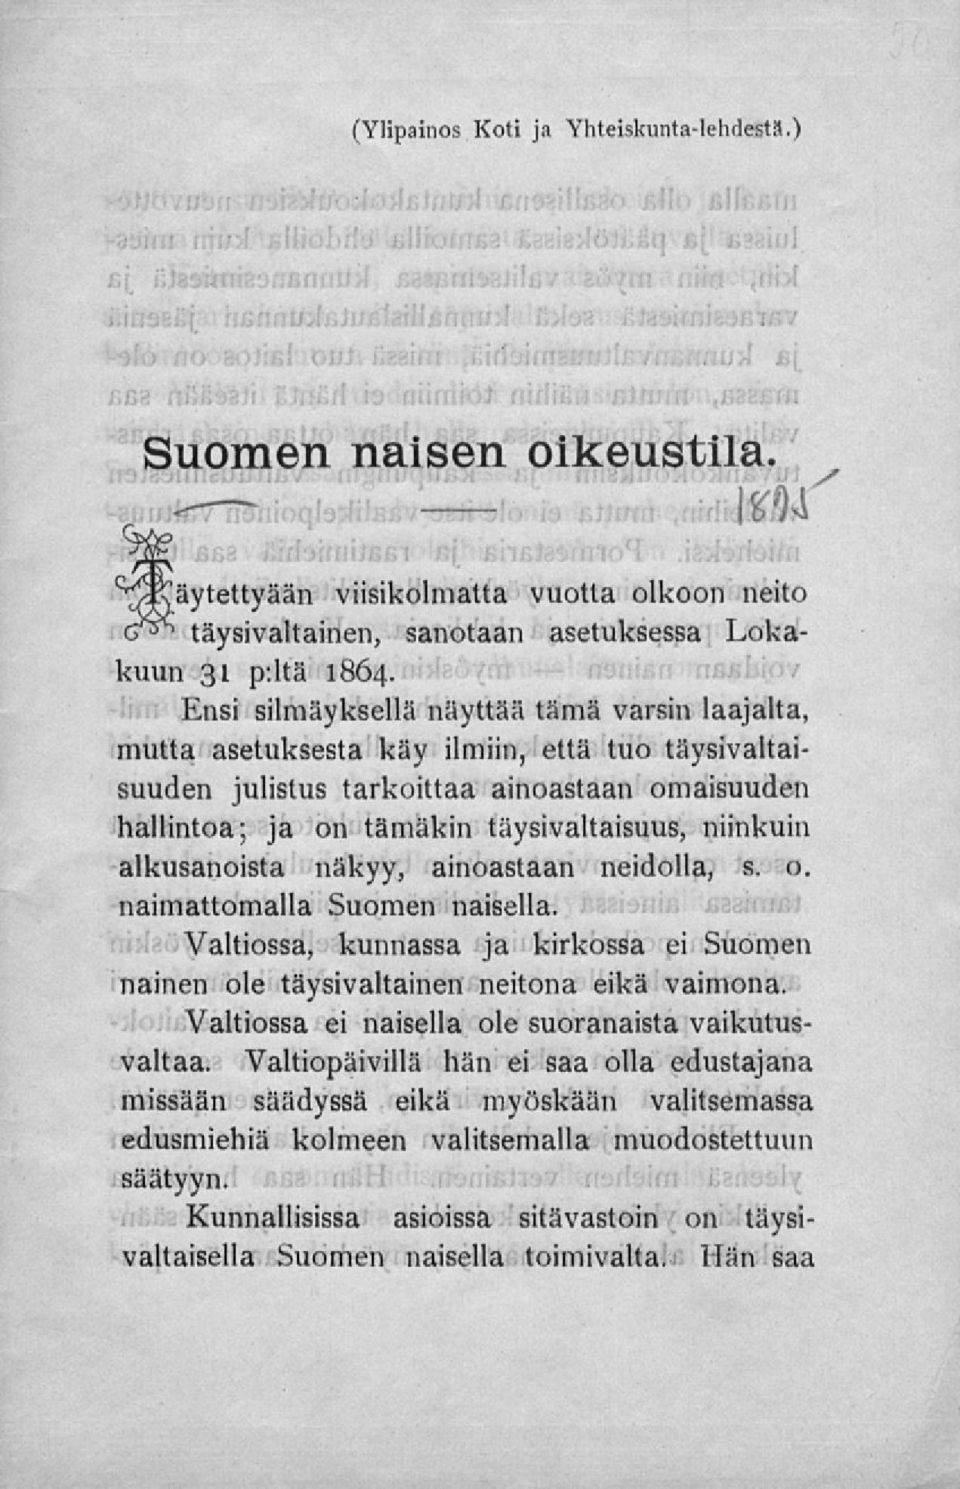 alkusanoista näkyy, ainoastaan neidolla, s. o. naimattomalla Suomen naisella. Valtiossa, kunnassa ja kirkossa ei Suomen nainen ole täysivaltainen neitona eikä vaimona.